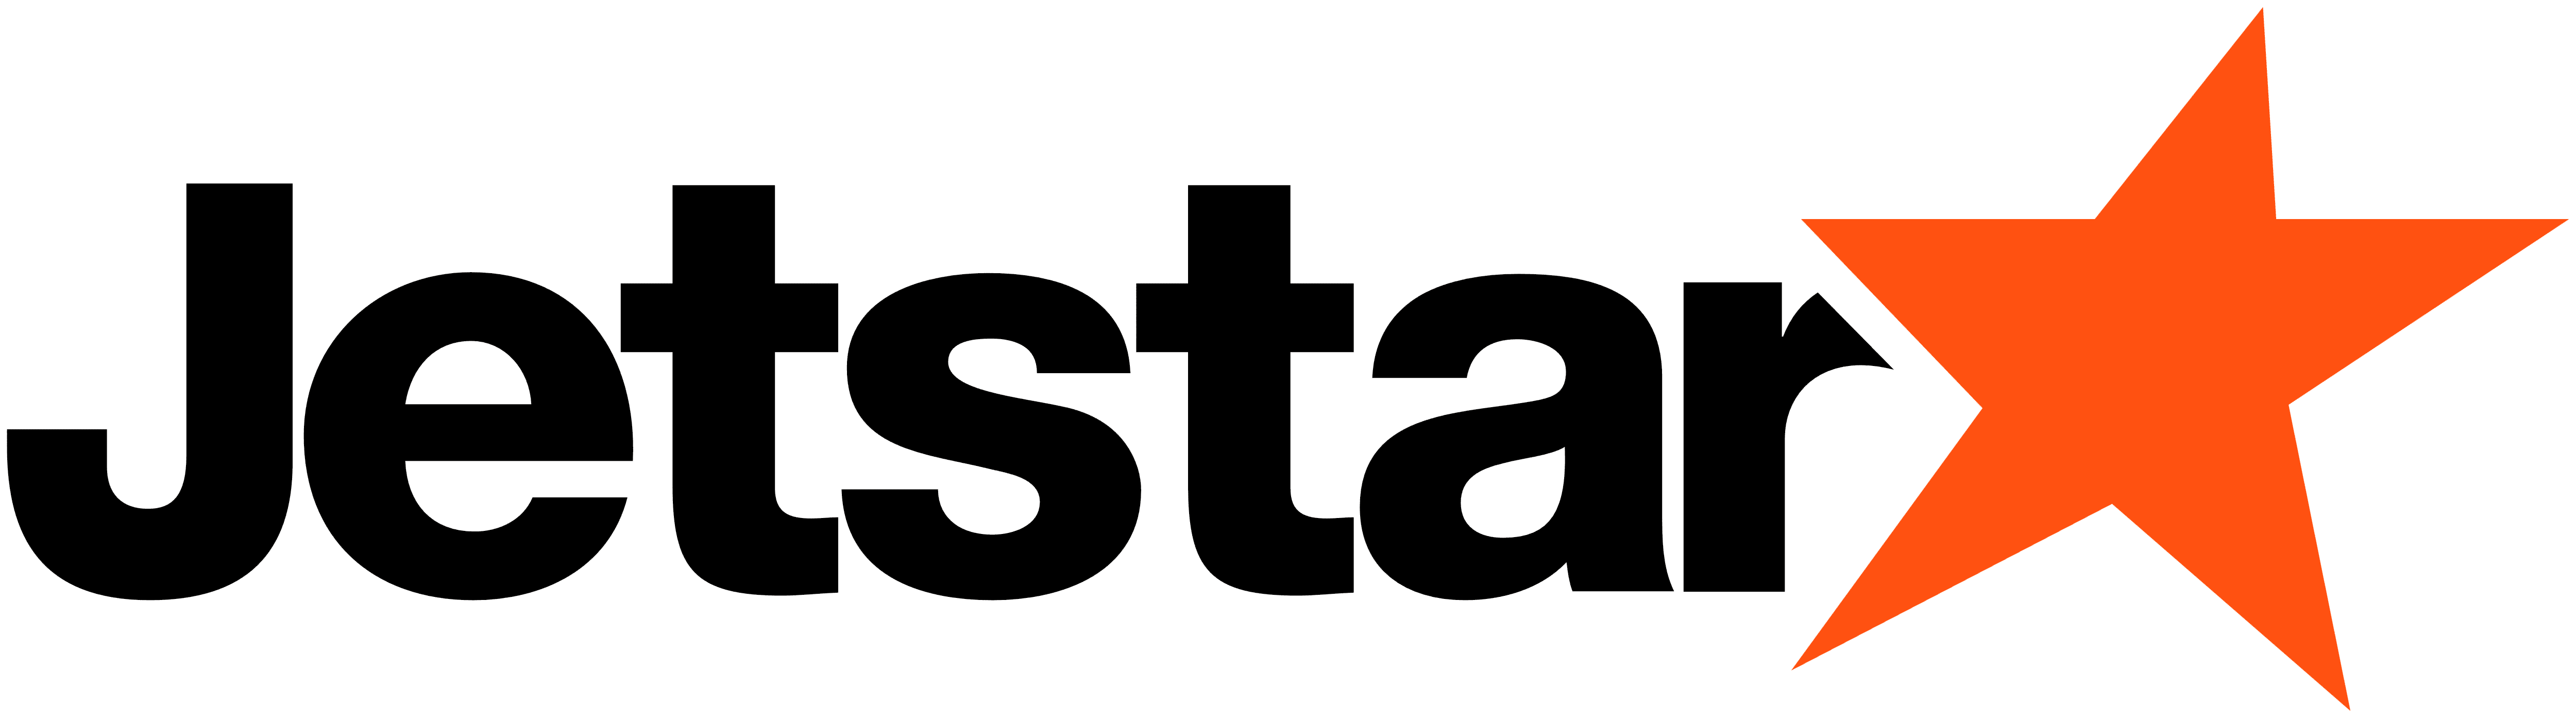 Compare Jetstar Credit Cards - Apply online | finder.com.au